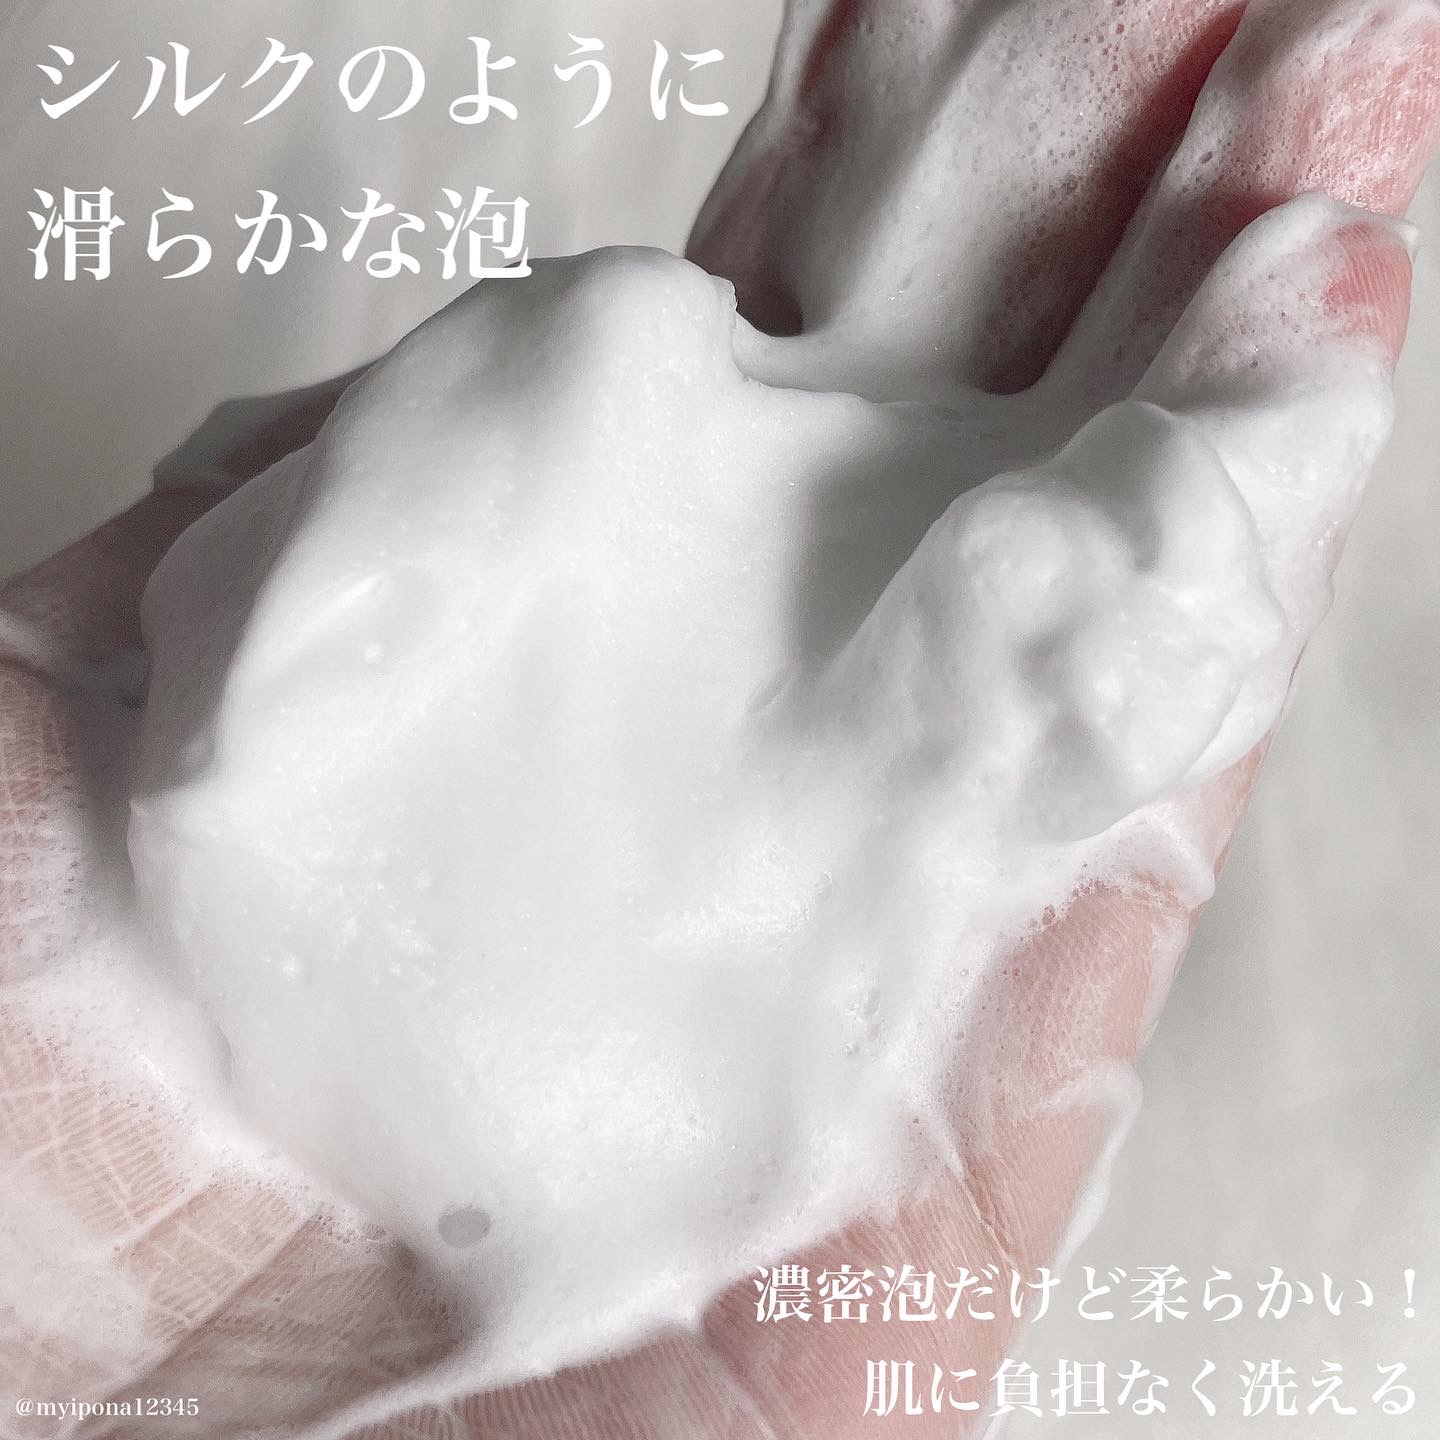 専科(SENKA) 洗顔専科 パーフェクトホイップuを使ったみぃぽなさんのクチコミ画像2